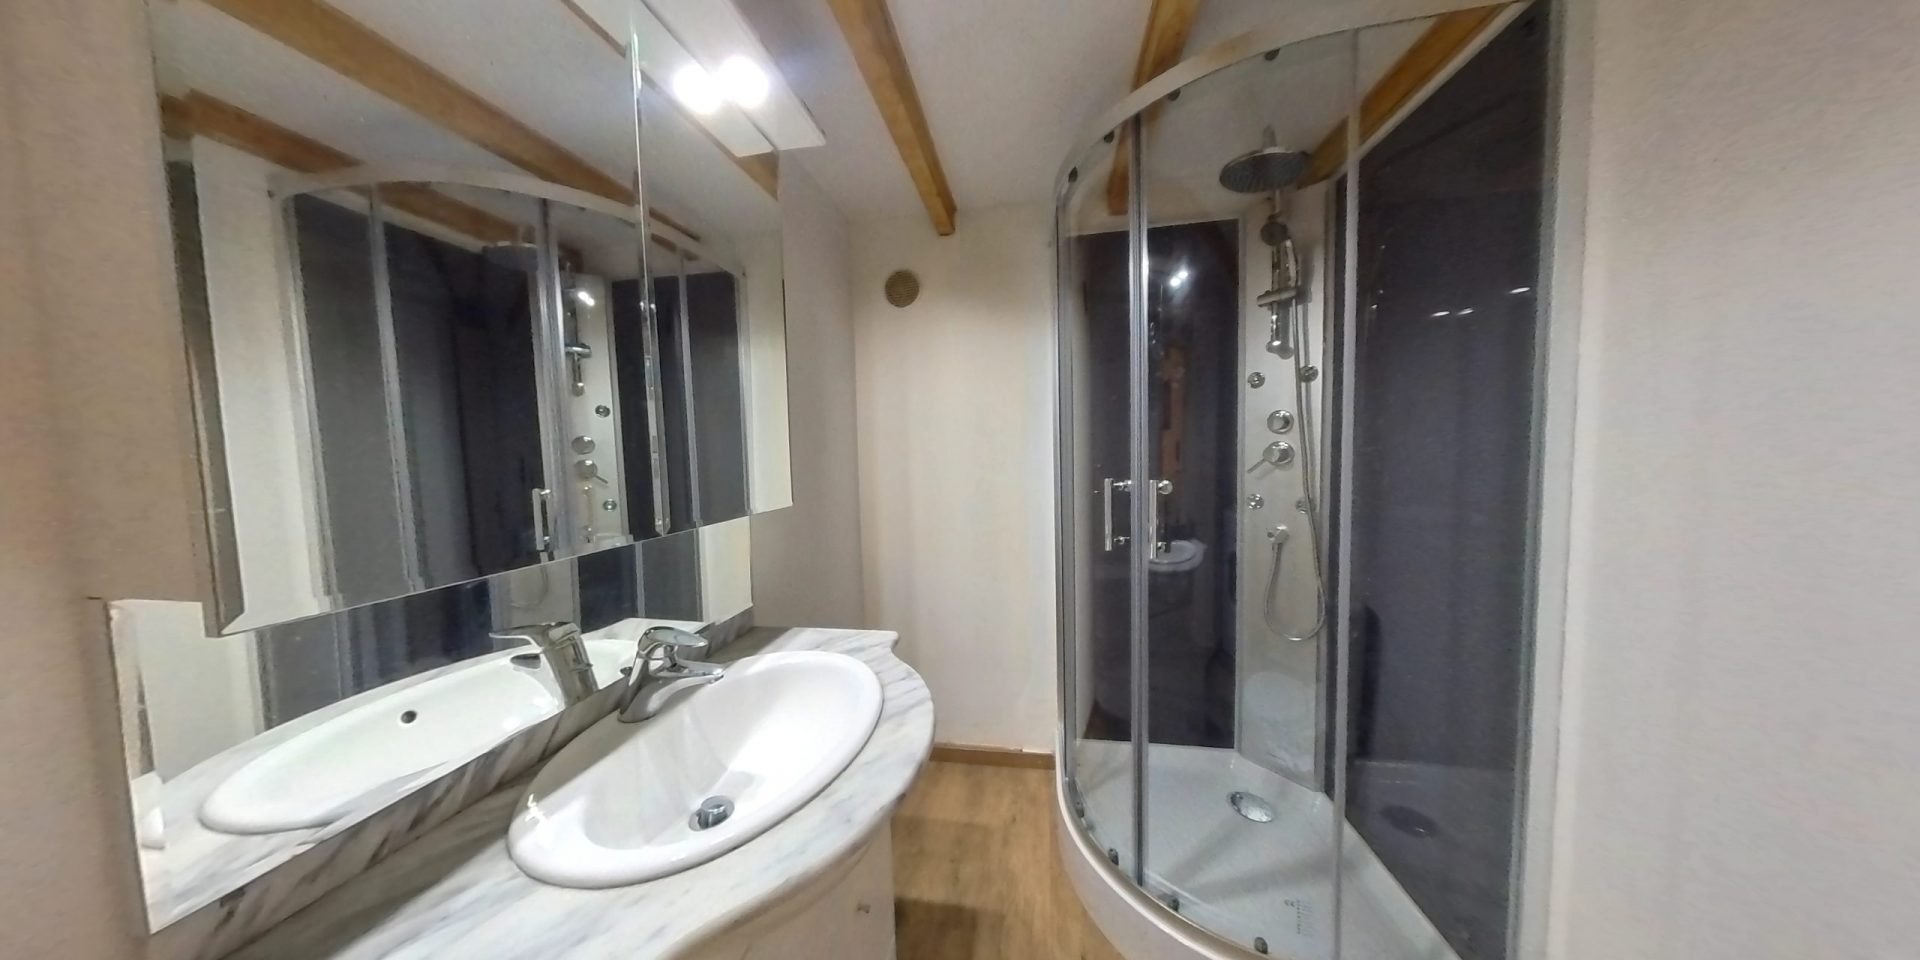 Vue de la salle de bain 1 composé d'une douche, un lavabo et un wc